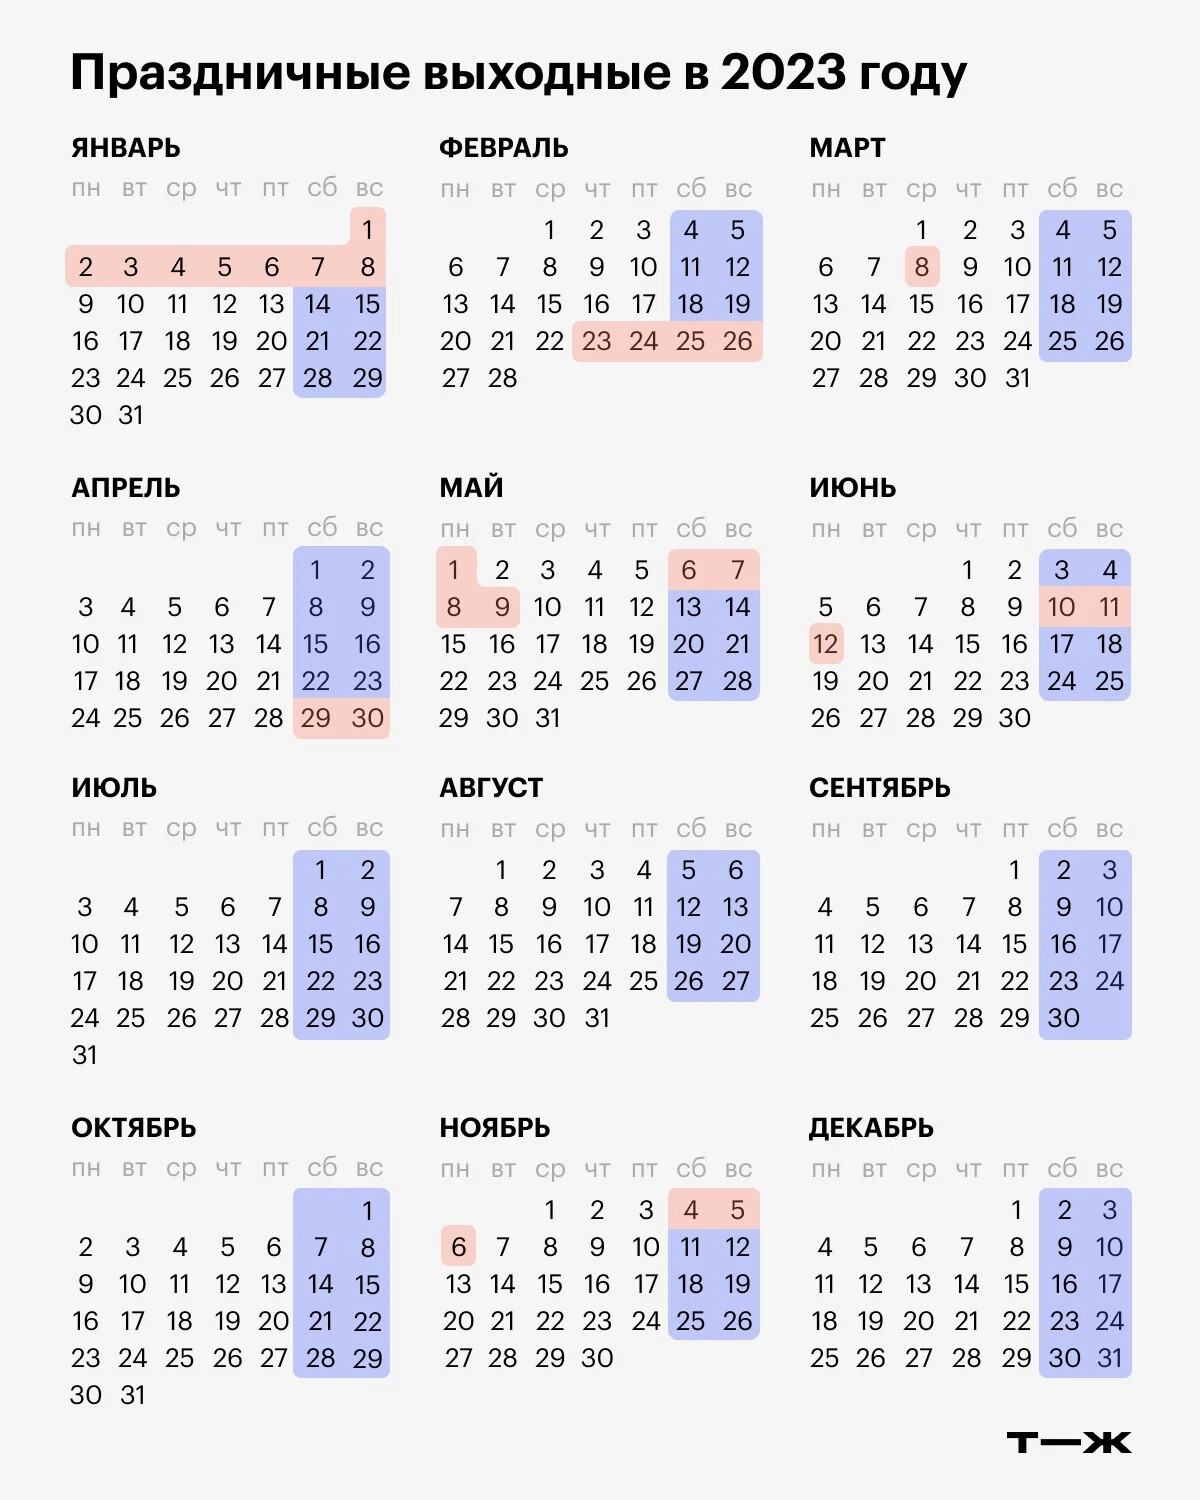 Как работаем и отдыхаем в апреле. Календарь праздничных дней 2023 года в России. Производственный календарь на 2023 год с праздниками РФ. Календарь праздников 2023 года в России нерабочие дни. Выходные и праздники в 2023 году в России нерабочие дни.